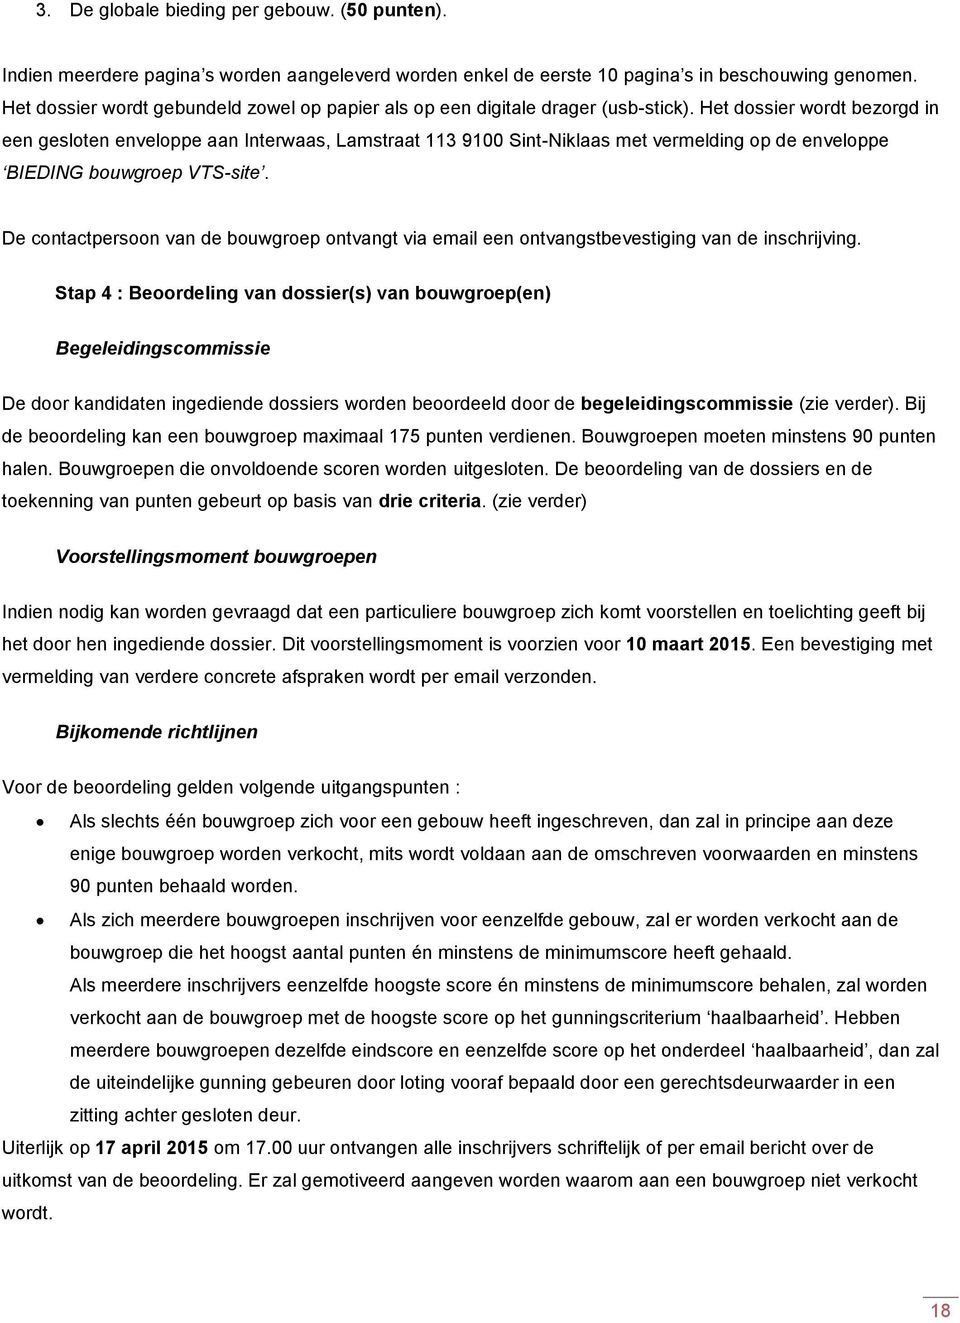 Het dossier wordt bezorgd in een gesloten enveloppe aan Interwaas, Lamstraat 113 9100 Sint-Niklaas met vermelding op de enveloppe BIEDING bouwgroep VTS-site.